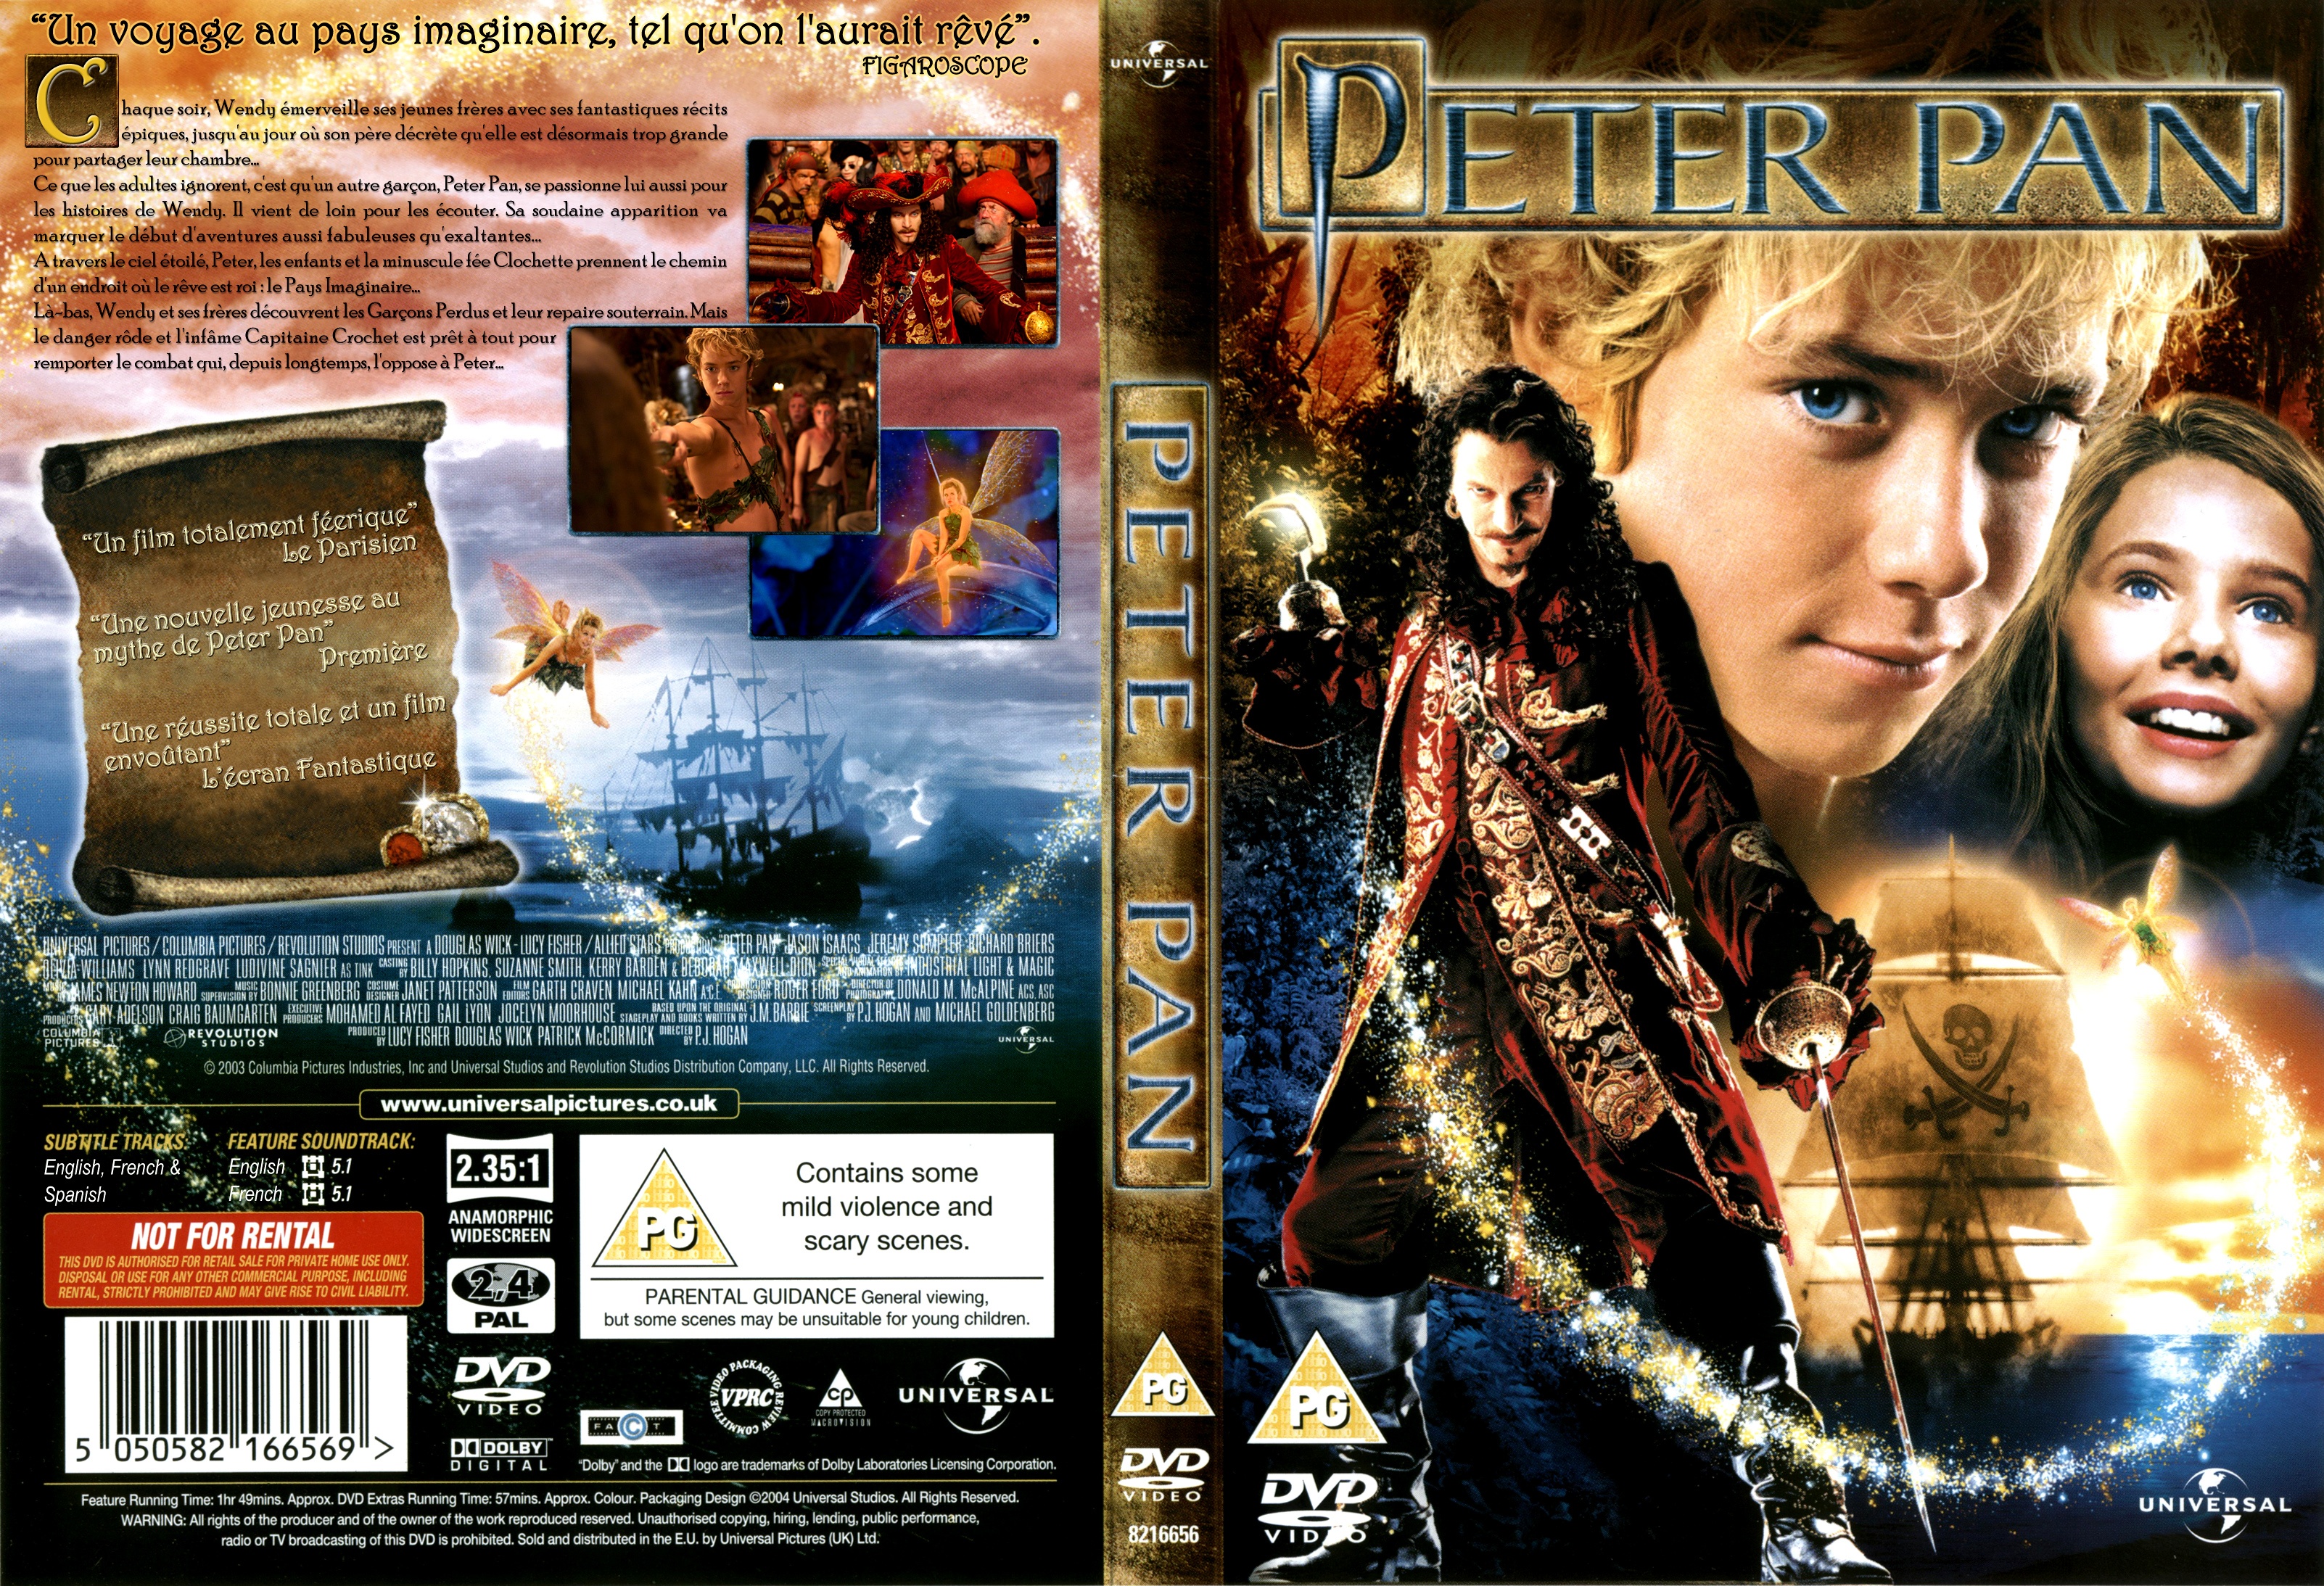 Jaquette DVD Peter Pan Le Film v2